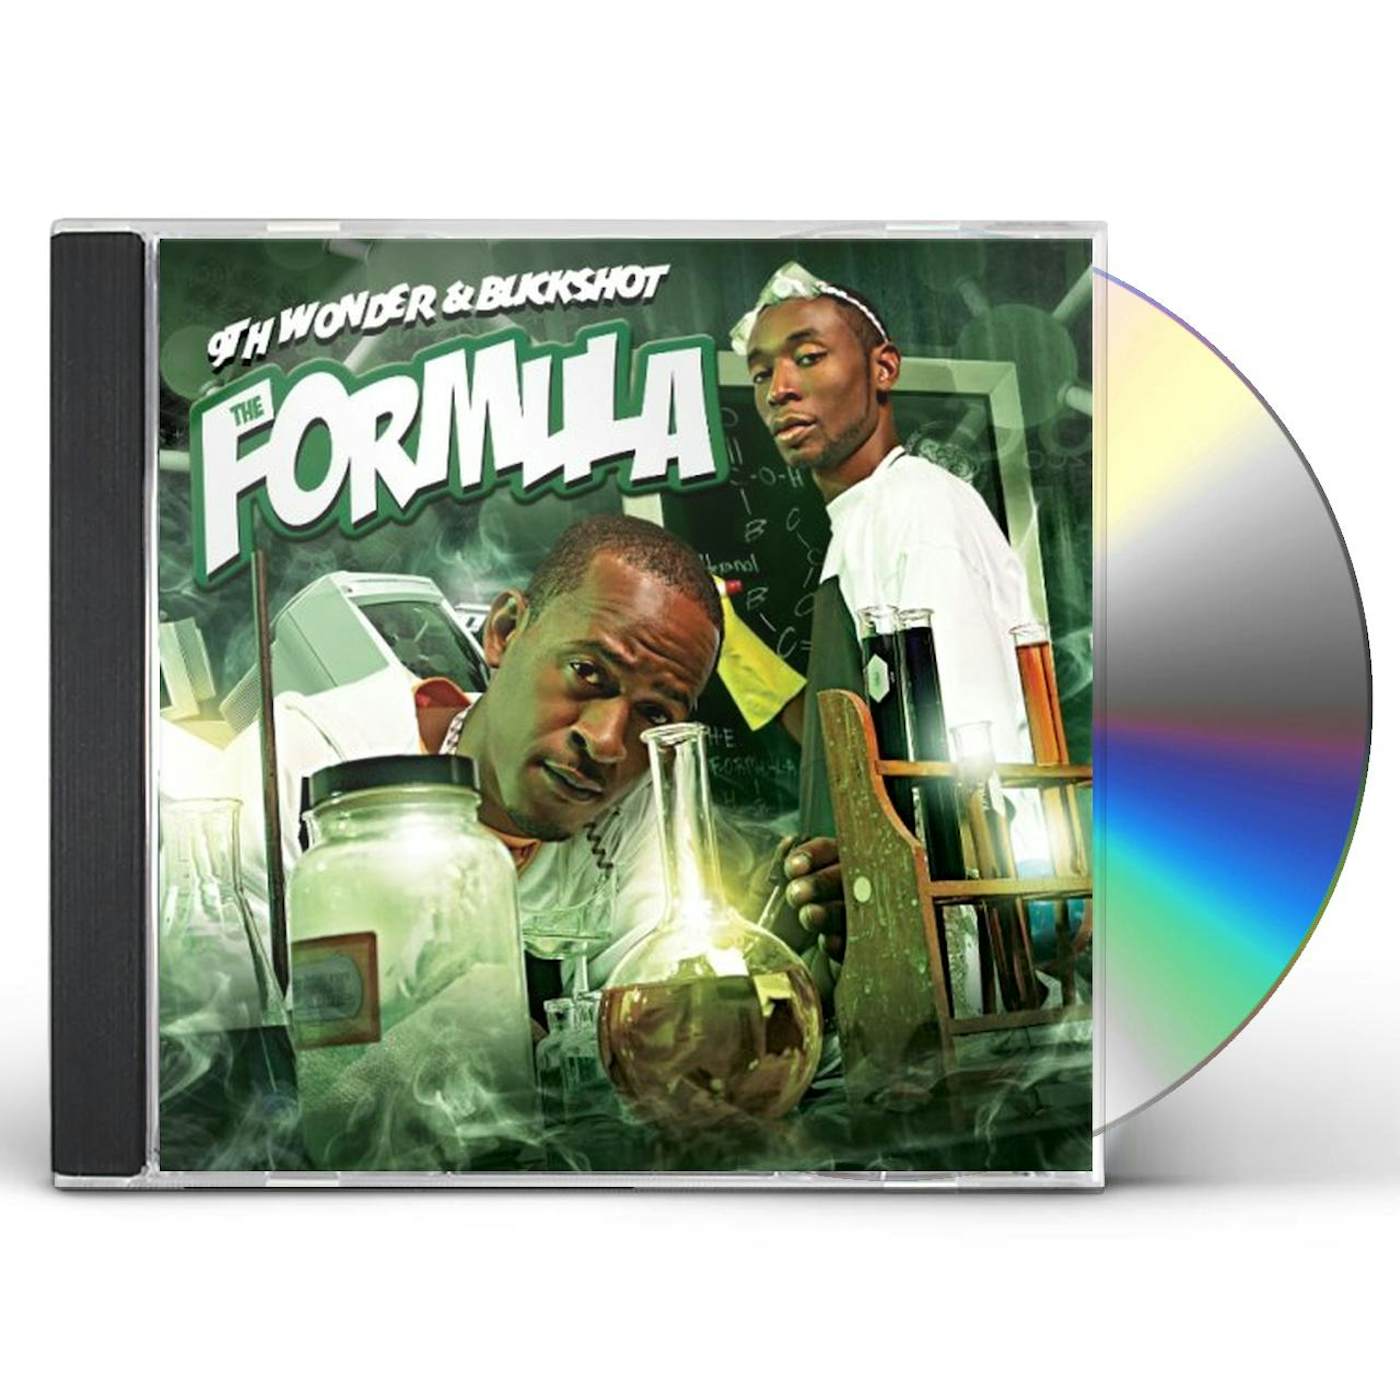 9th Wonder & Buckshot FORMULA CD